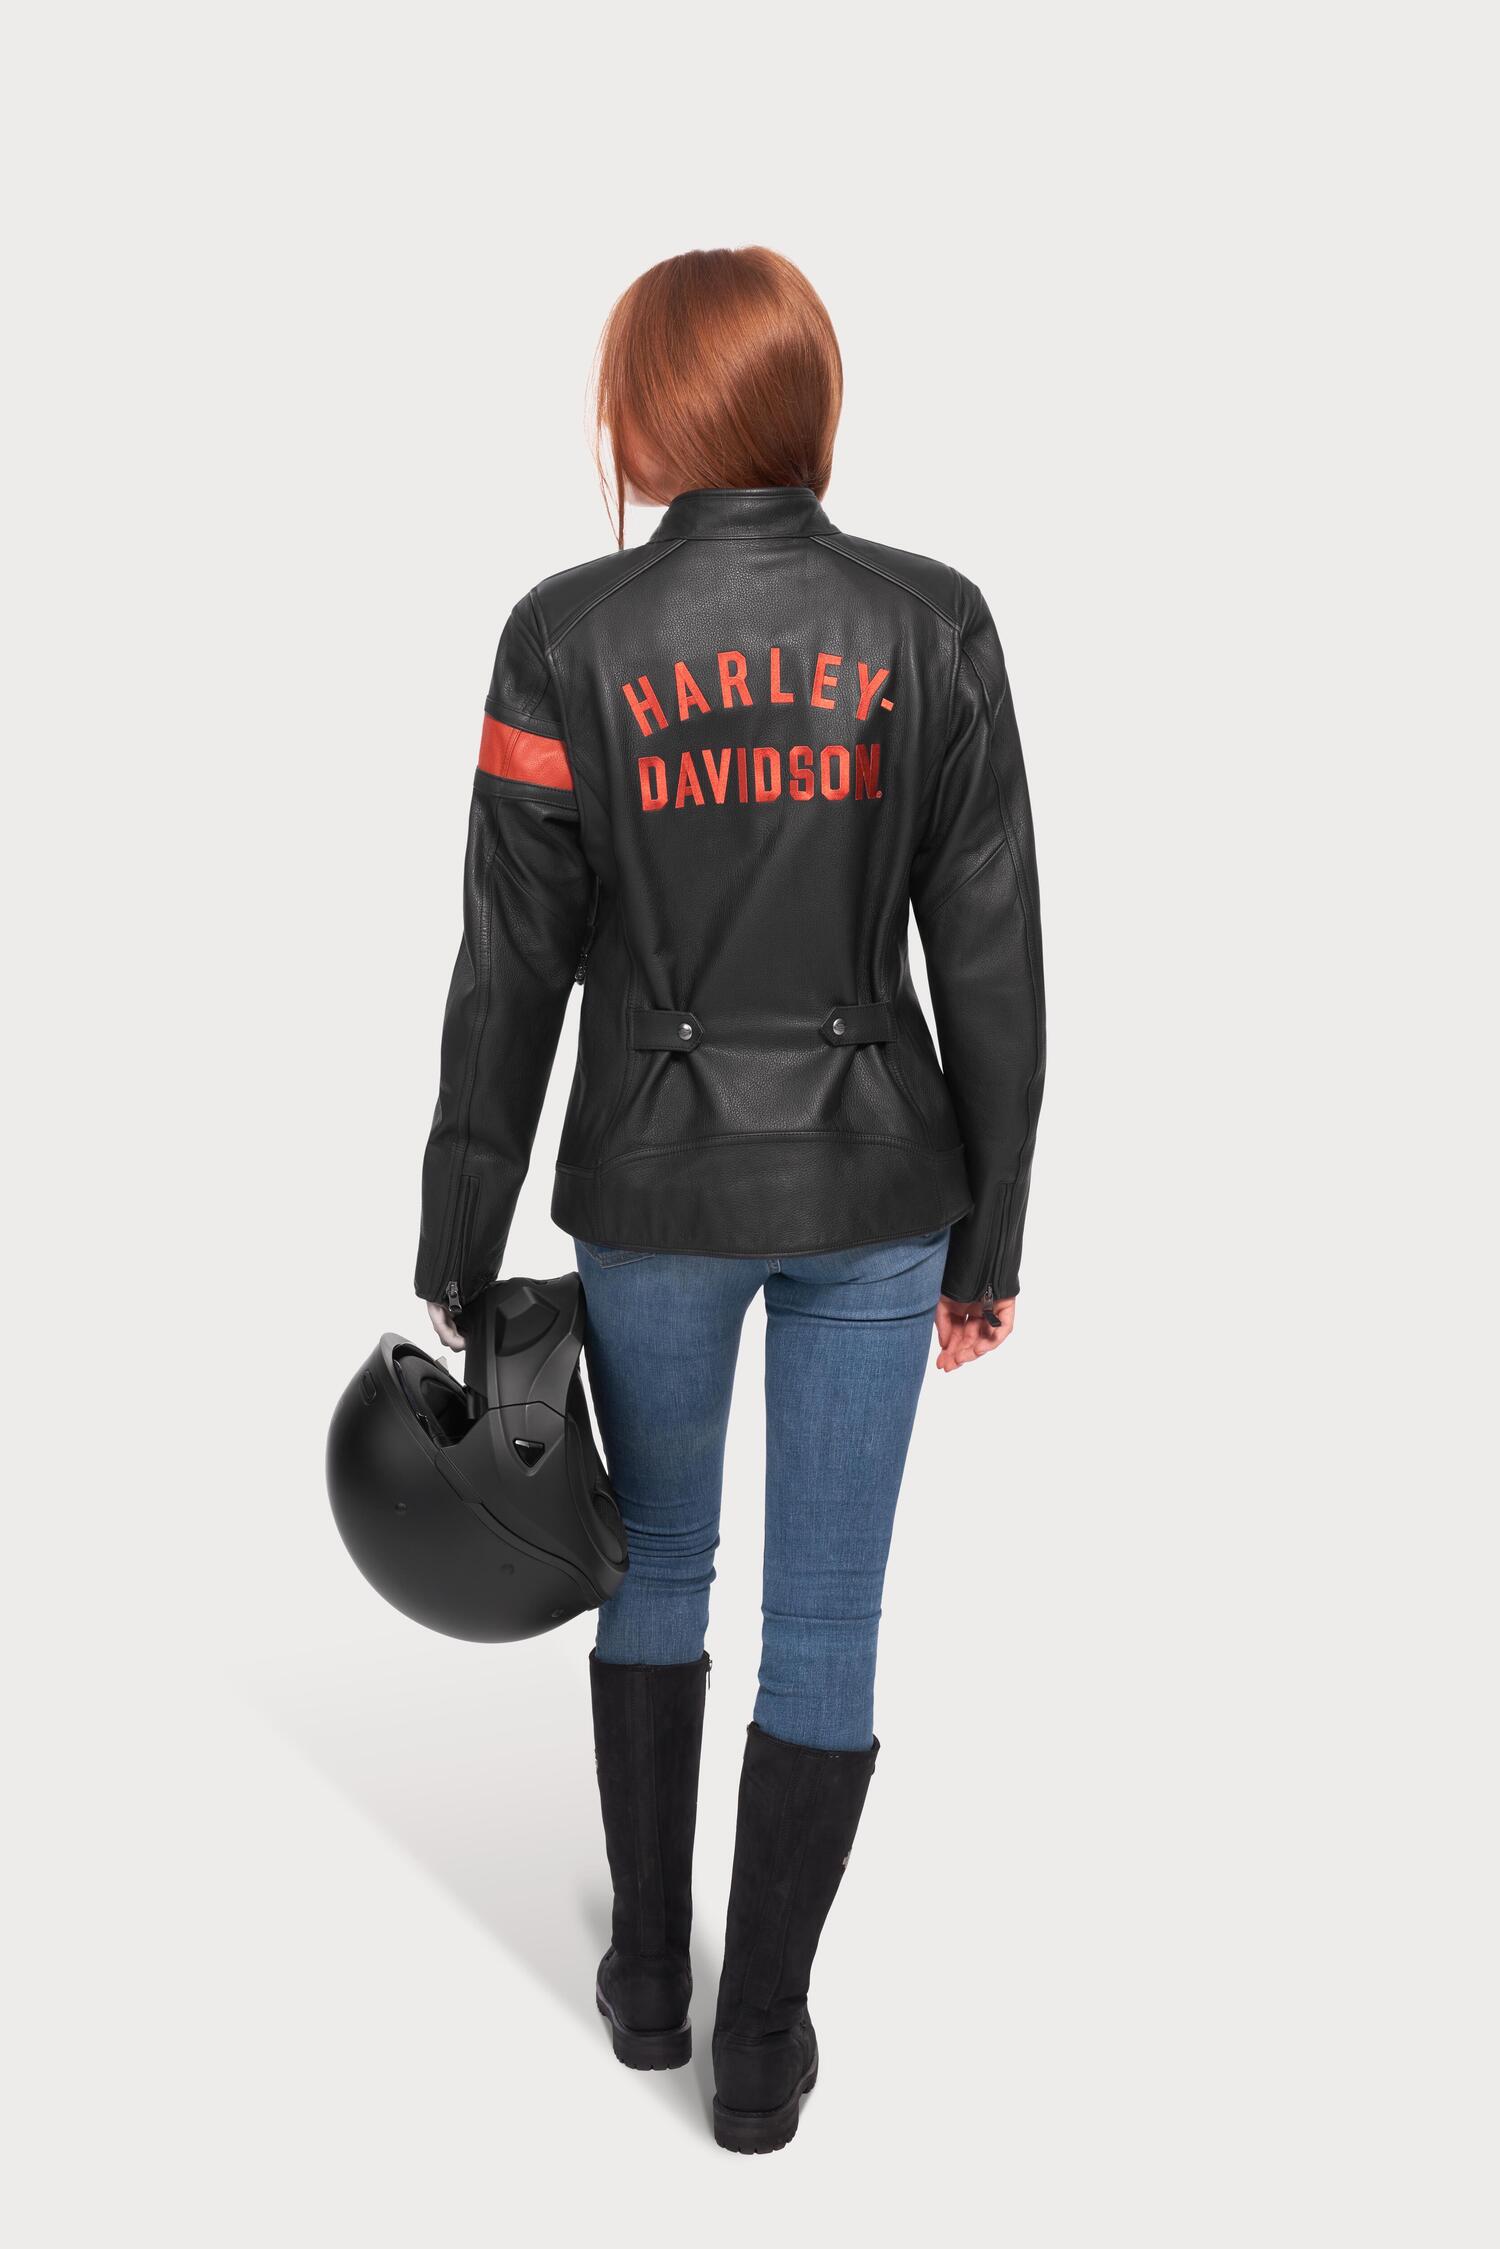 Rayo Rancio deslealtad Chaqueta Cuero Mujer Harley-Davidson® Woman Hwy-100 Waterproof Leather  Jacket - CE 98005-22EW